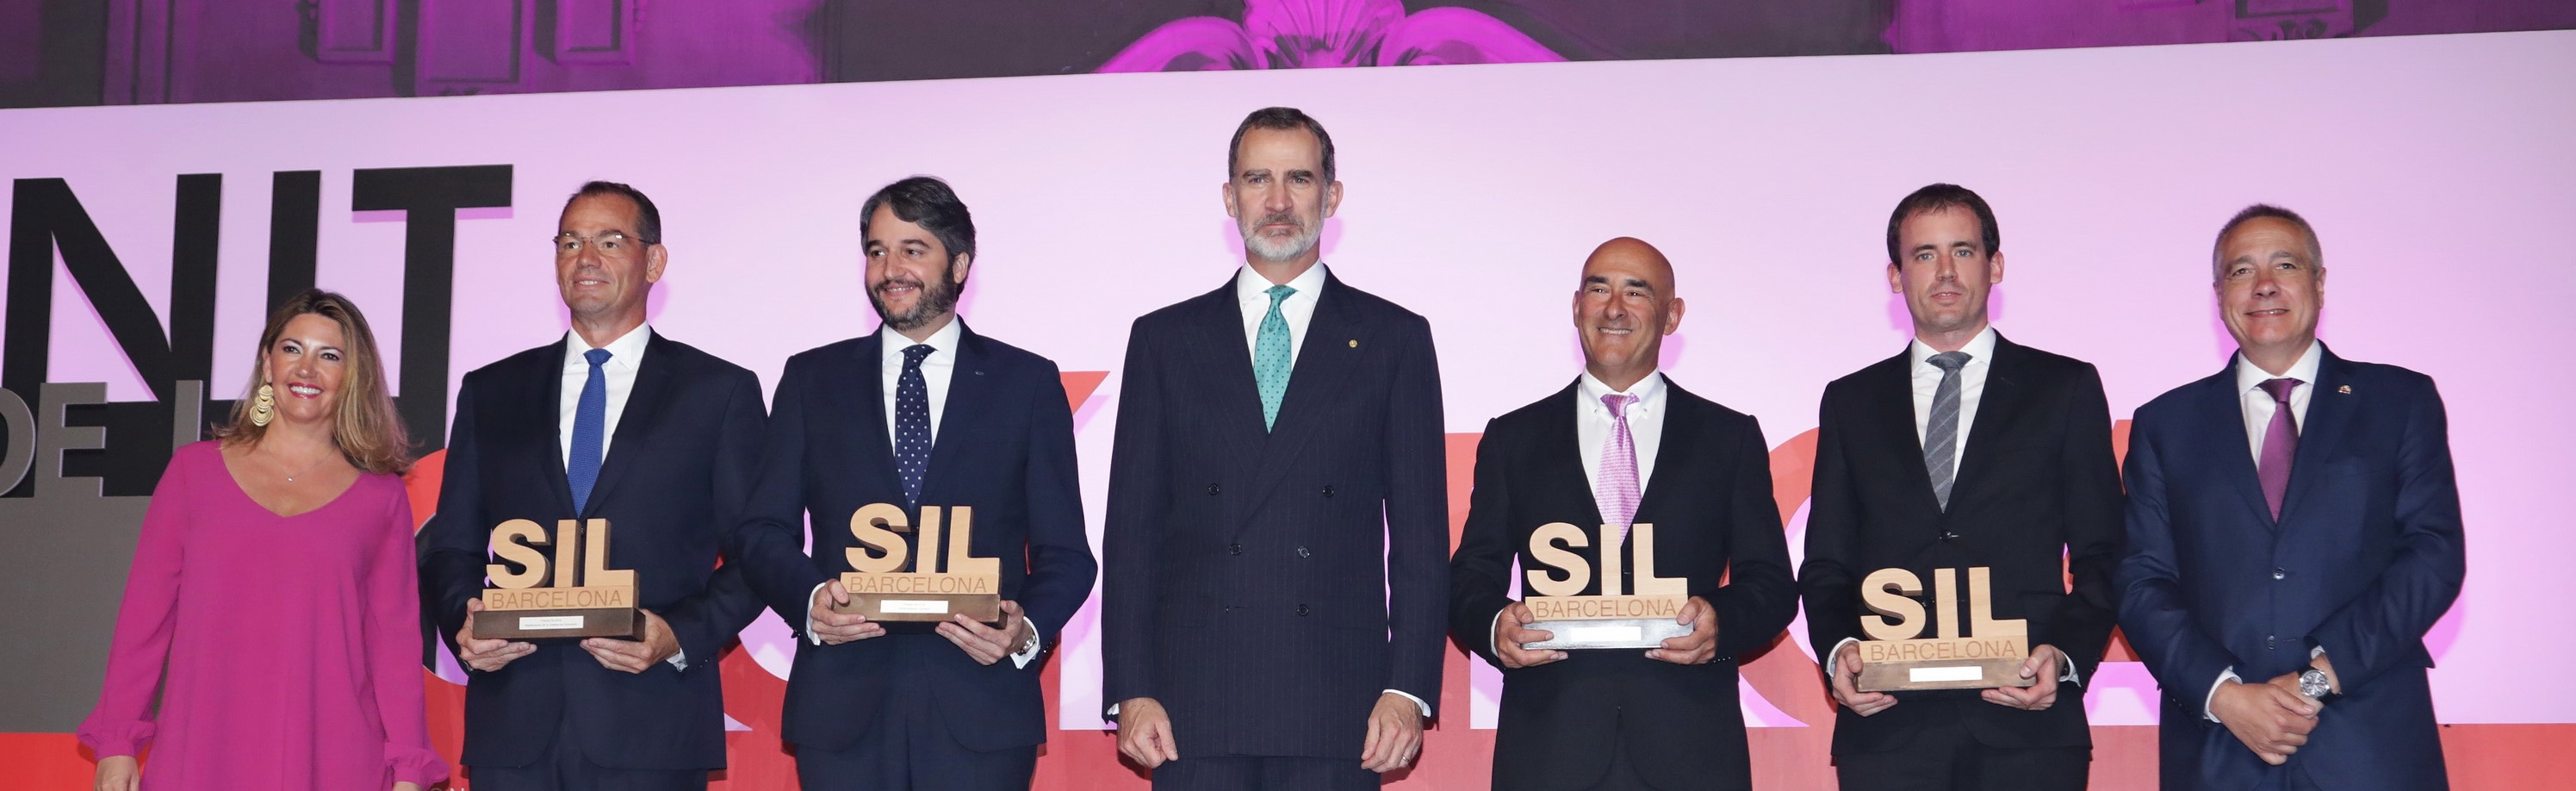 Celsa Group_Premios SIL_economía-circular